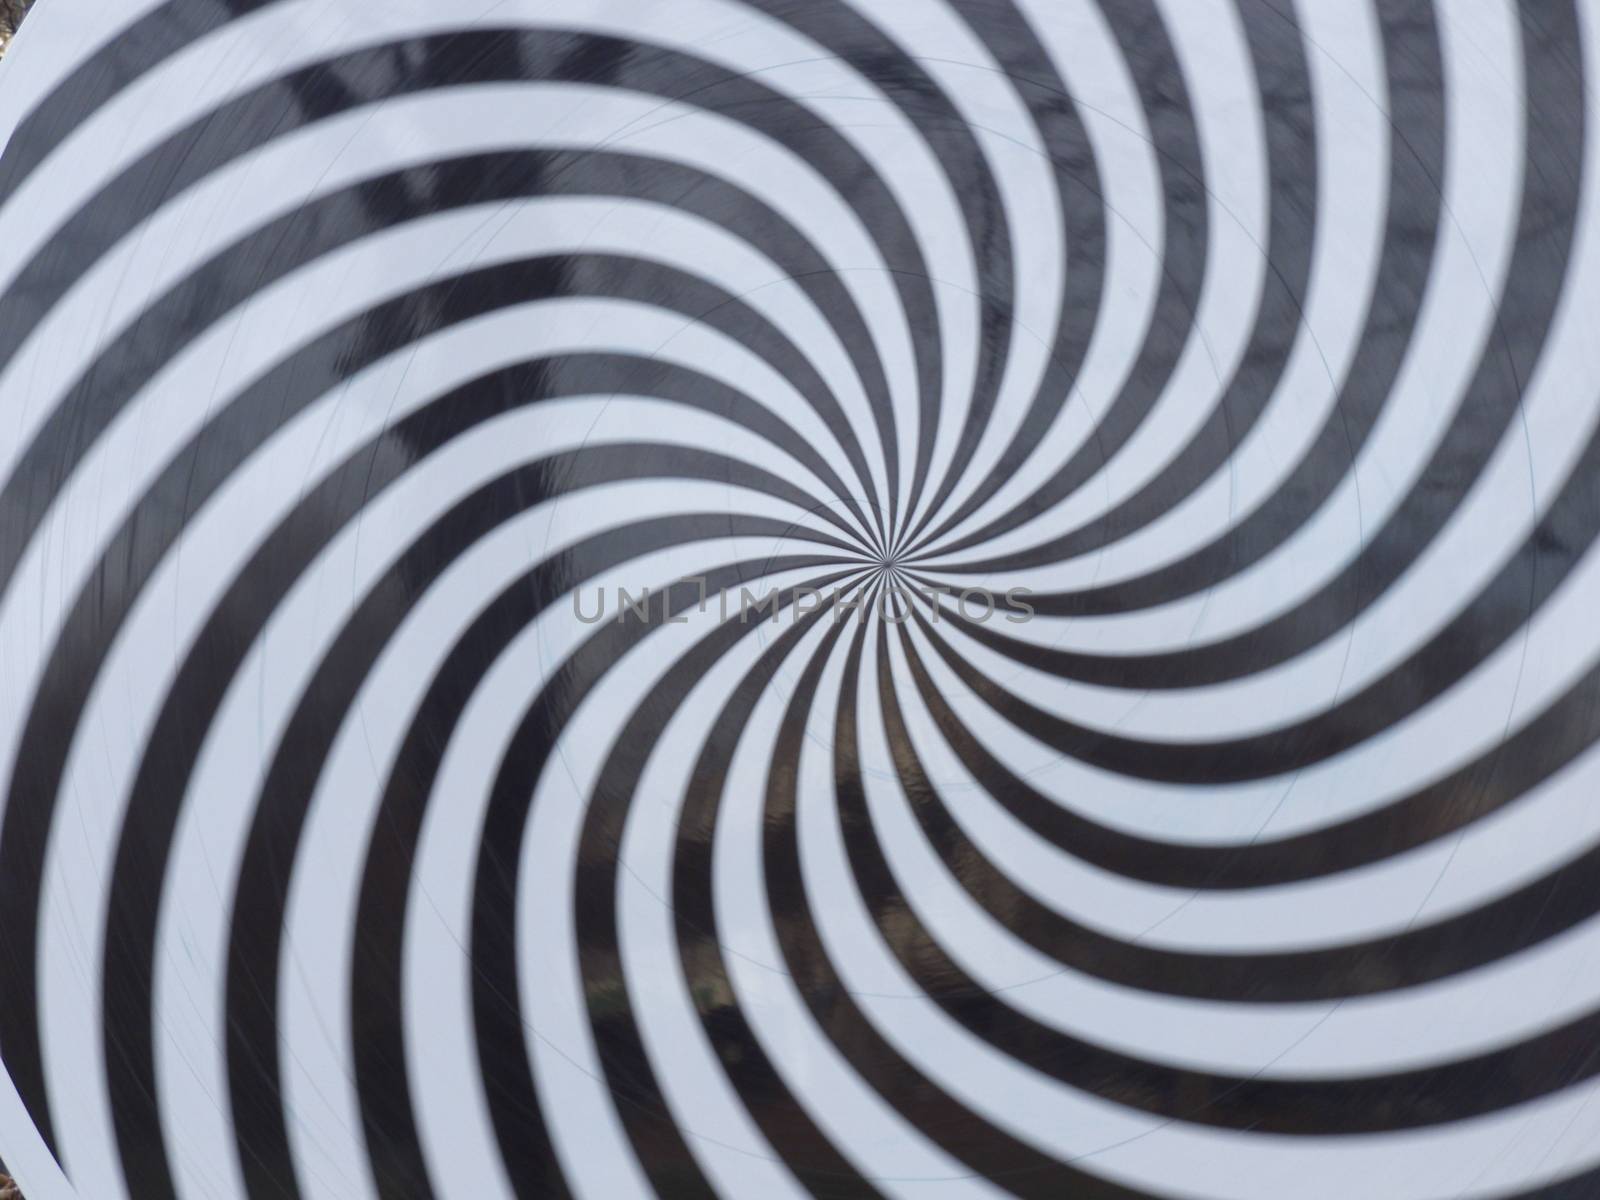 Hypnosis Spiral by JFsPic